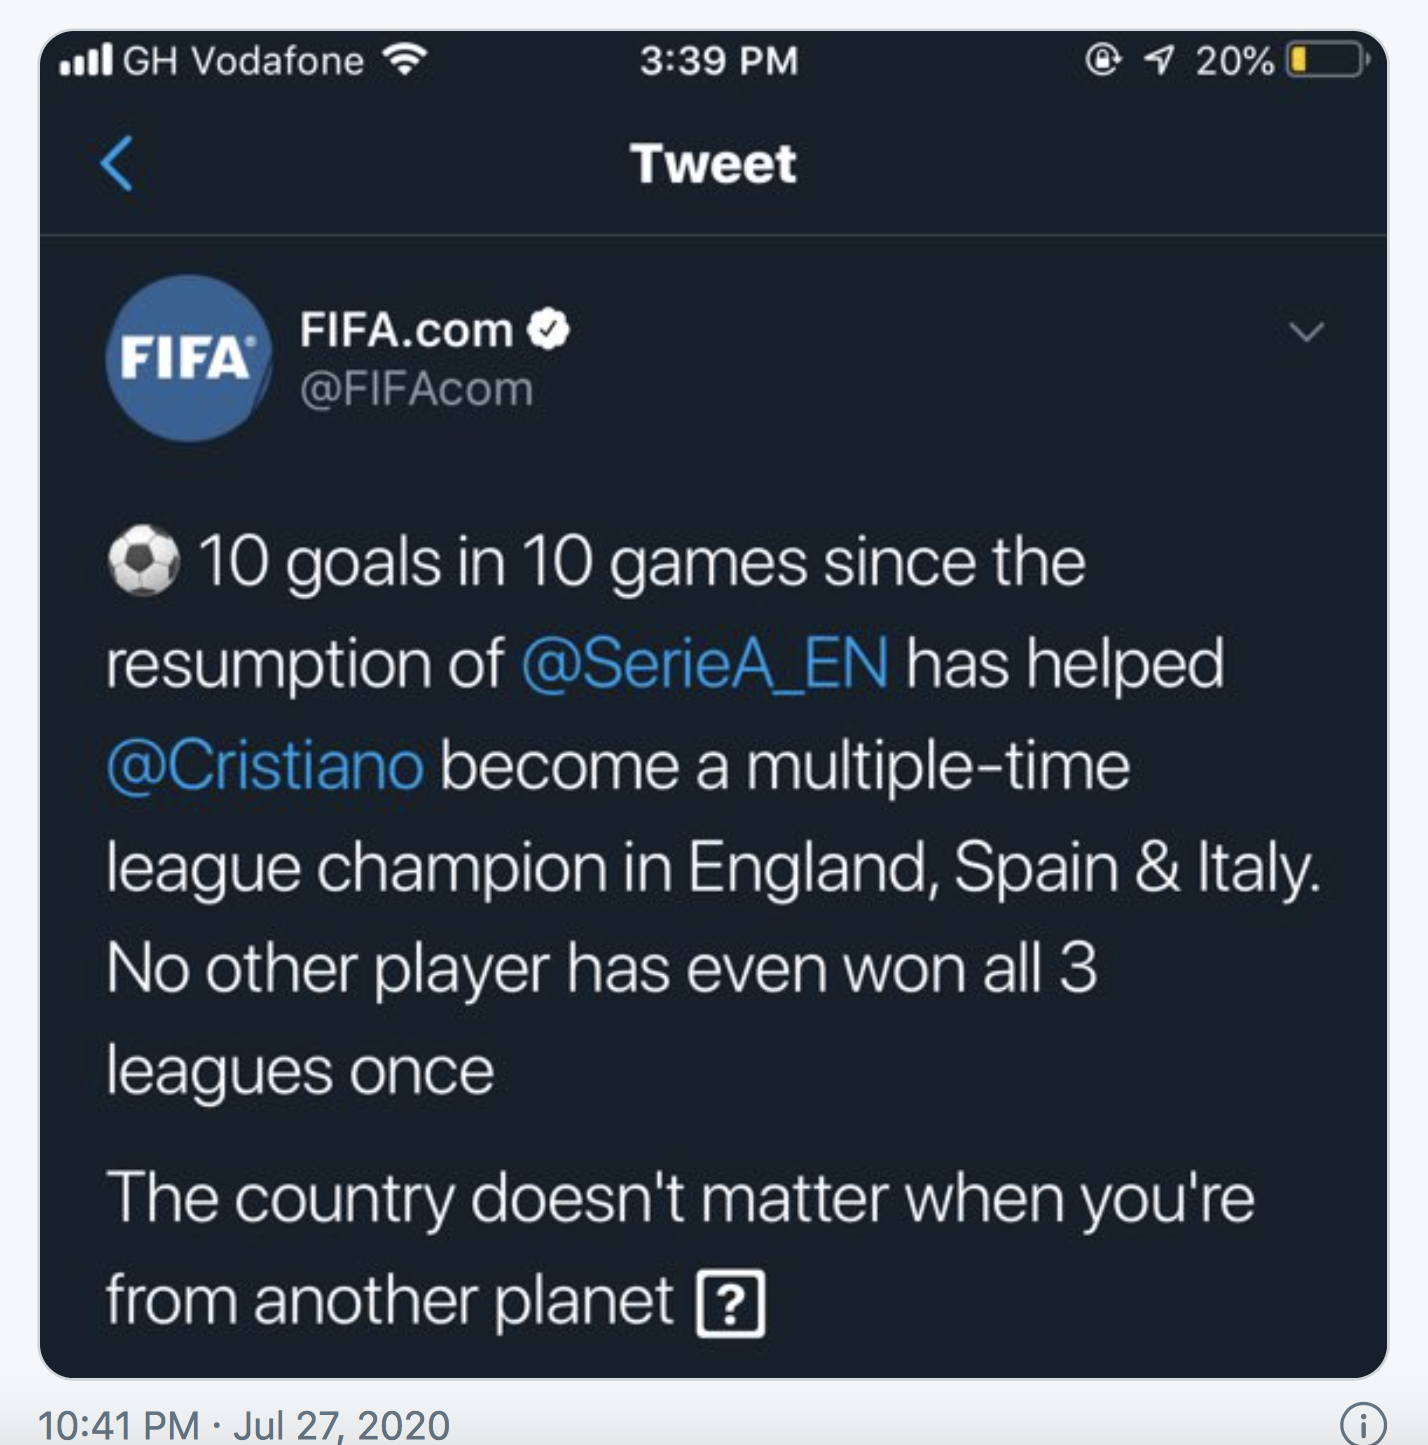 Hâm mộ FIFA và Ronaldo? Bạn sẽ không muốn bỏ lỡ bất kỳ hình ảnh nào liên quan đến họ trên Twitter. Nếu bạn là người yêu thể thao, đặc biệt là bóng đá, hãy tìm thấy những hình ảnh đặc biệt của họ bằng cách truy cập tài khoản Twitter của các chúng ta.